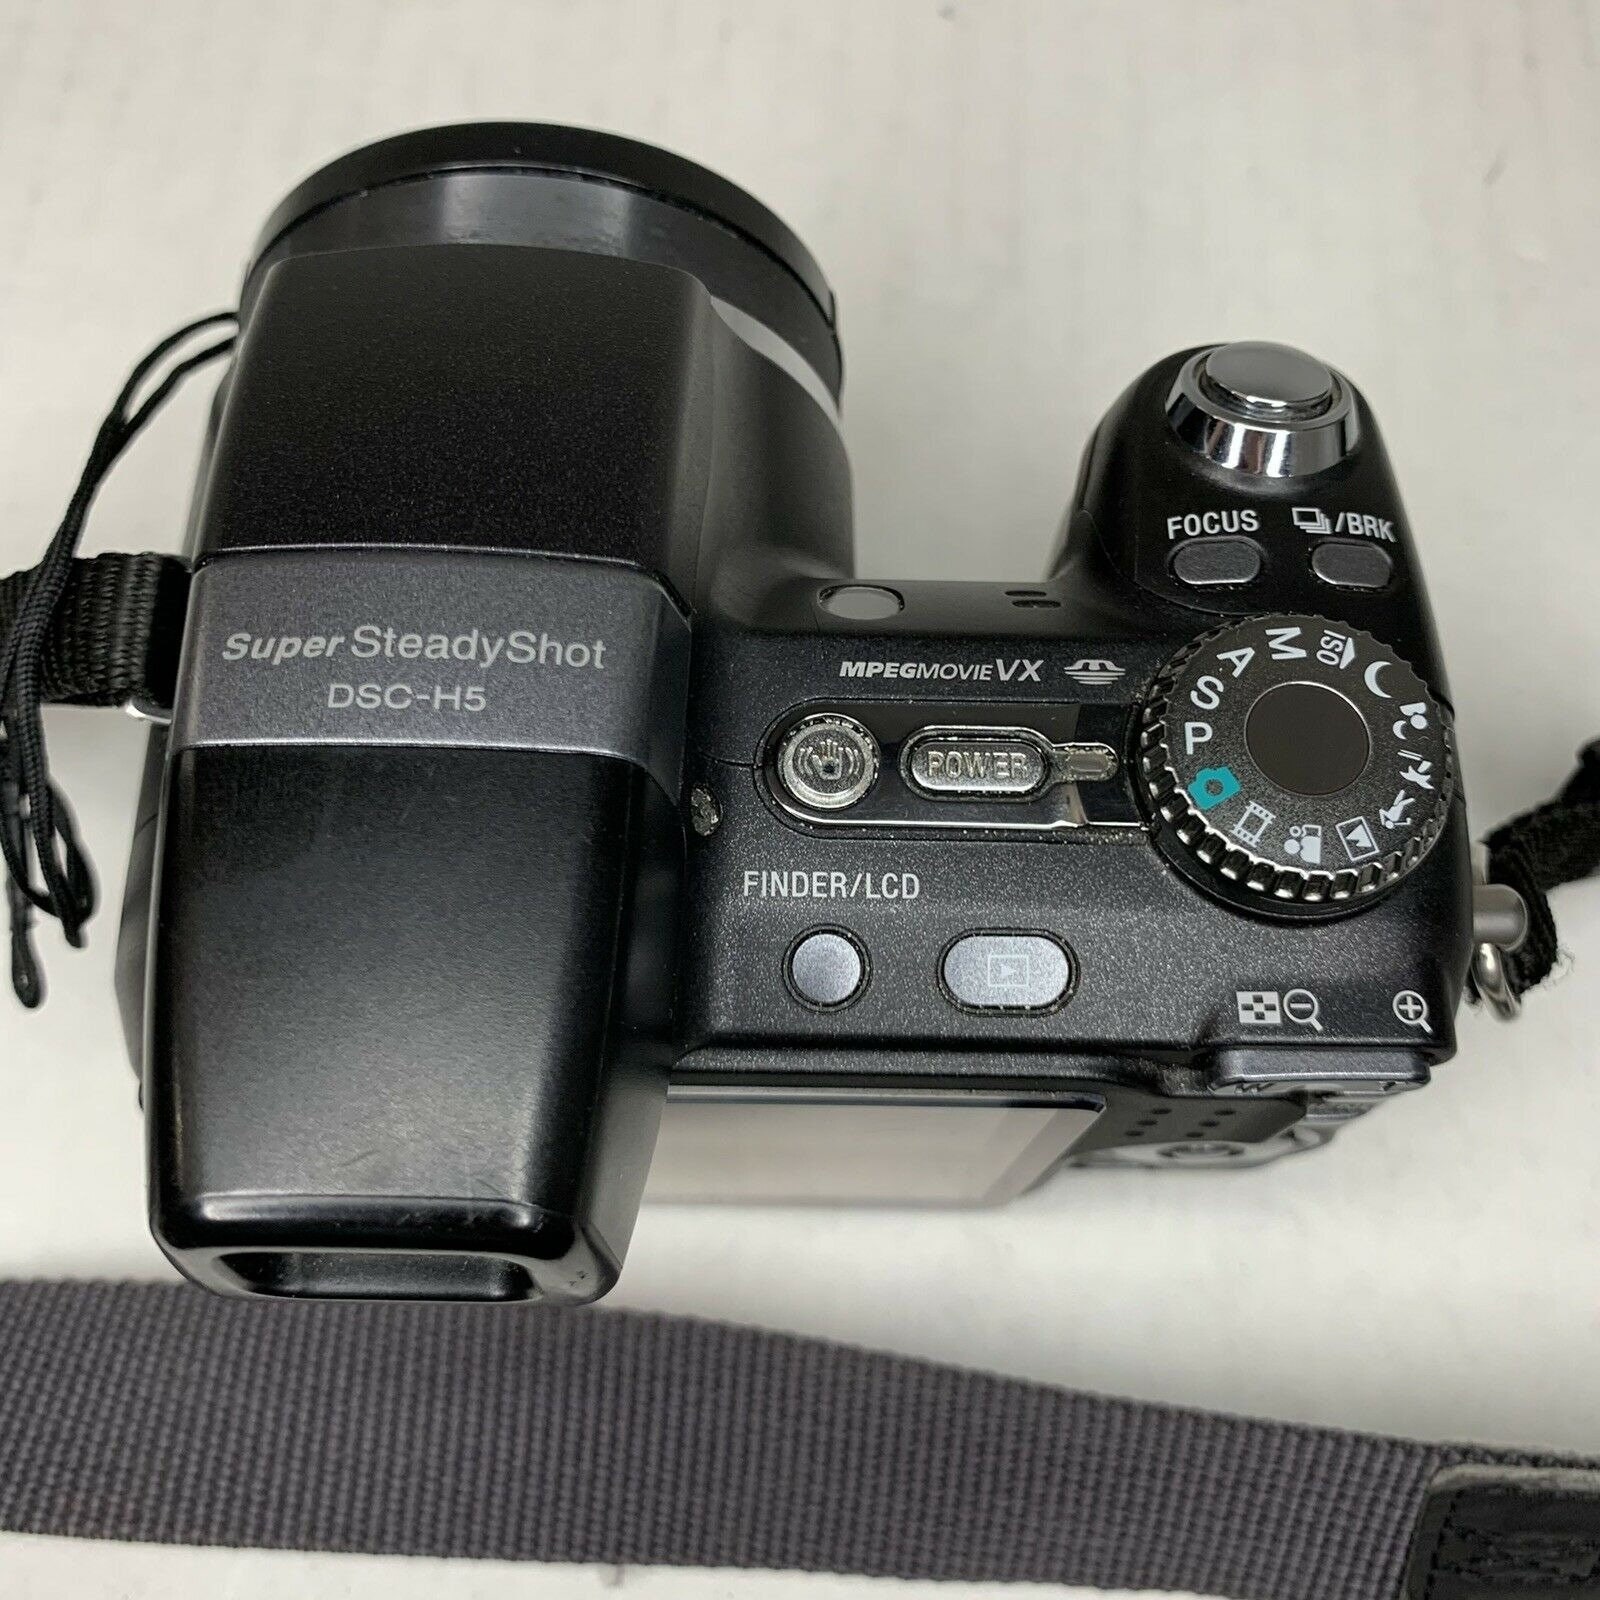 Sony Cyber-shot DSC-H5 7.2 MP Digital Camera Black 12x Super picture picture